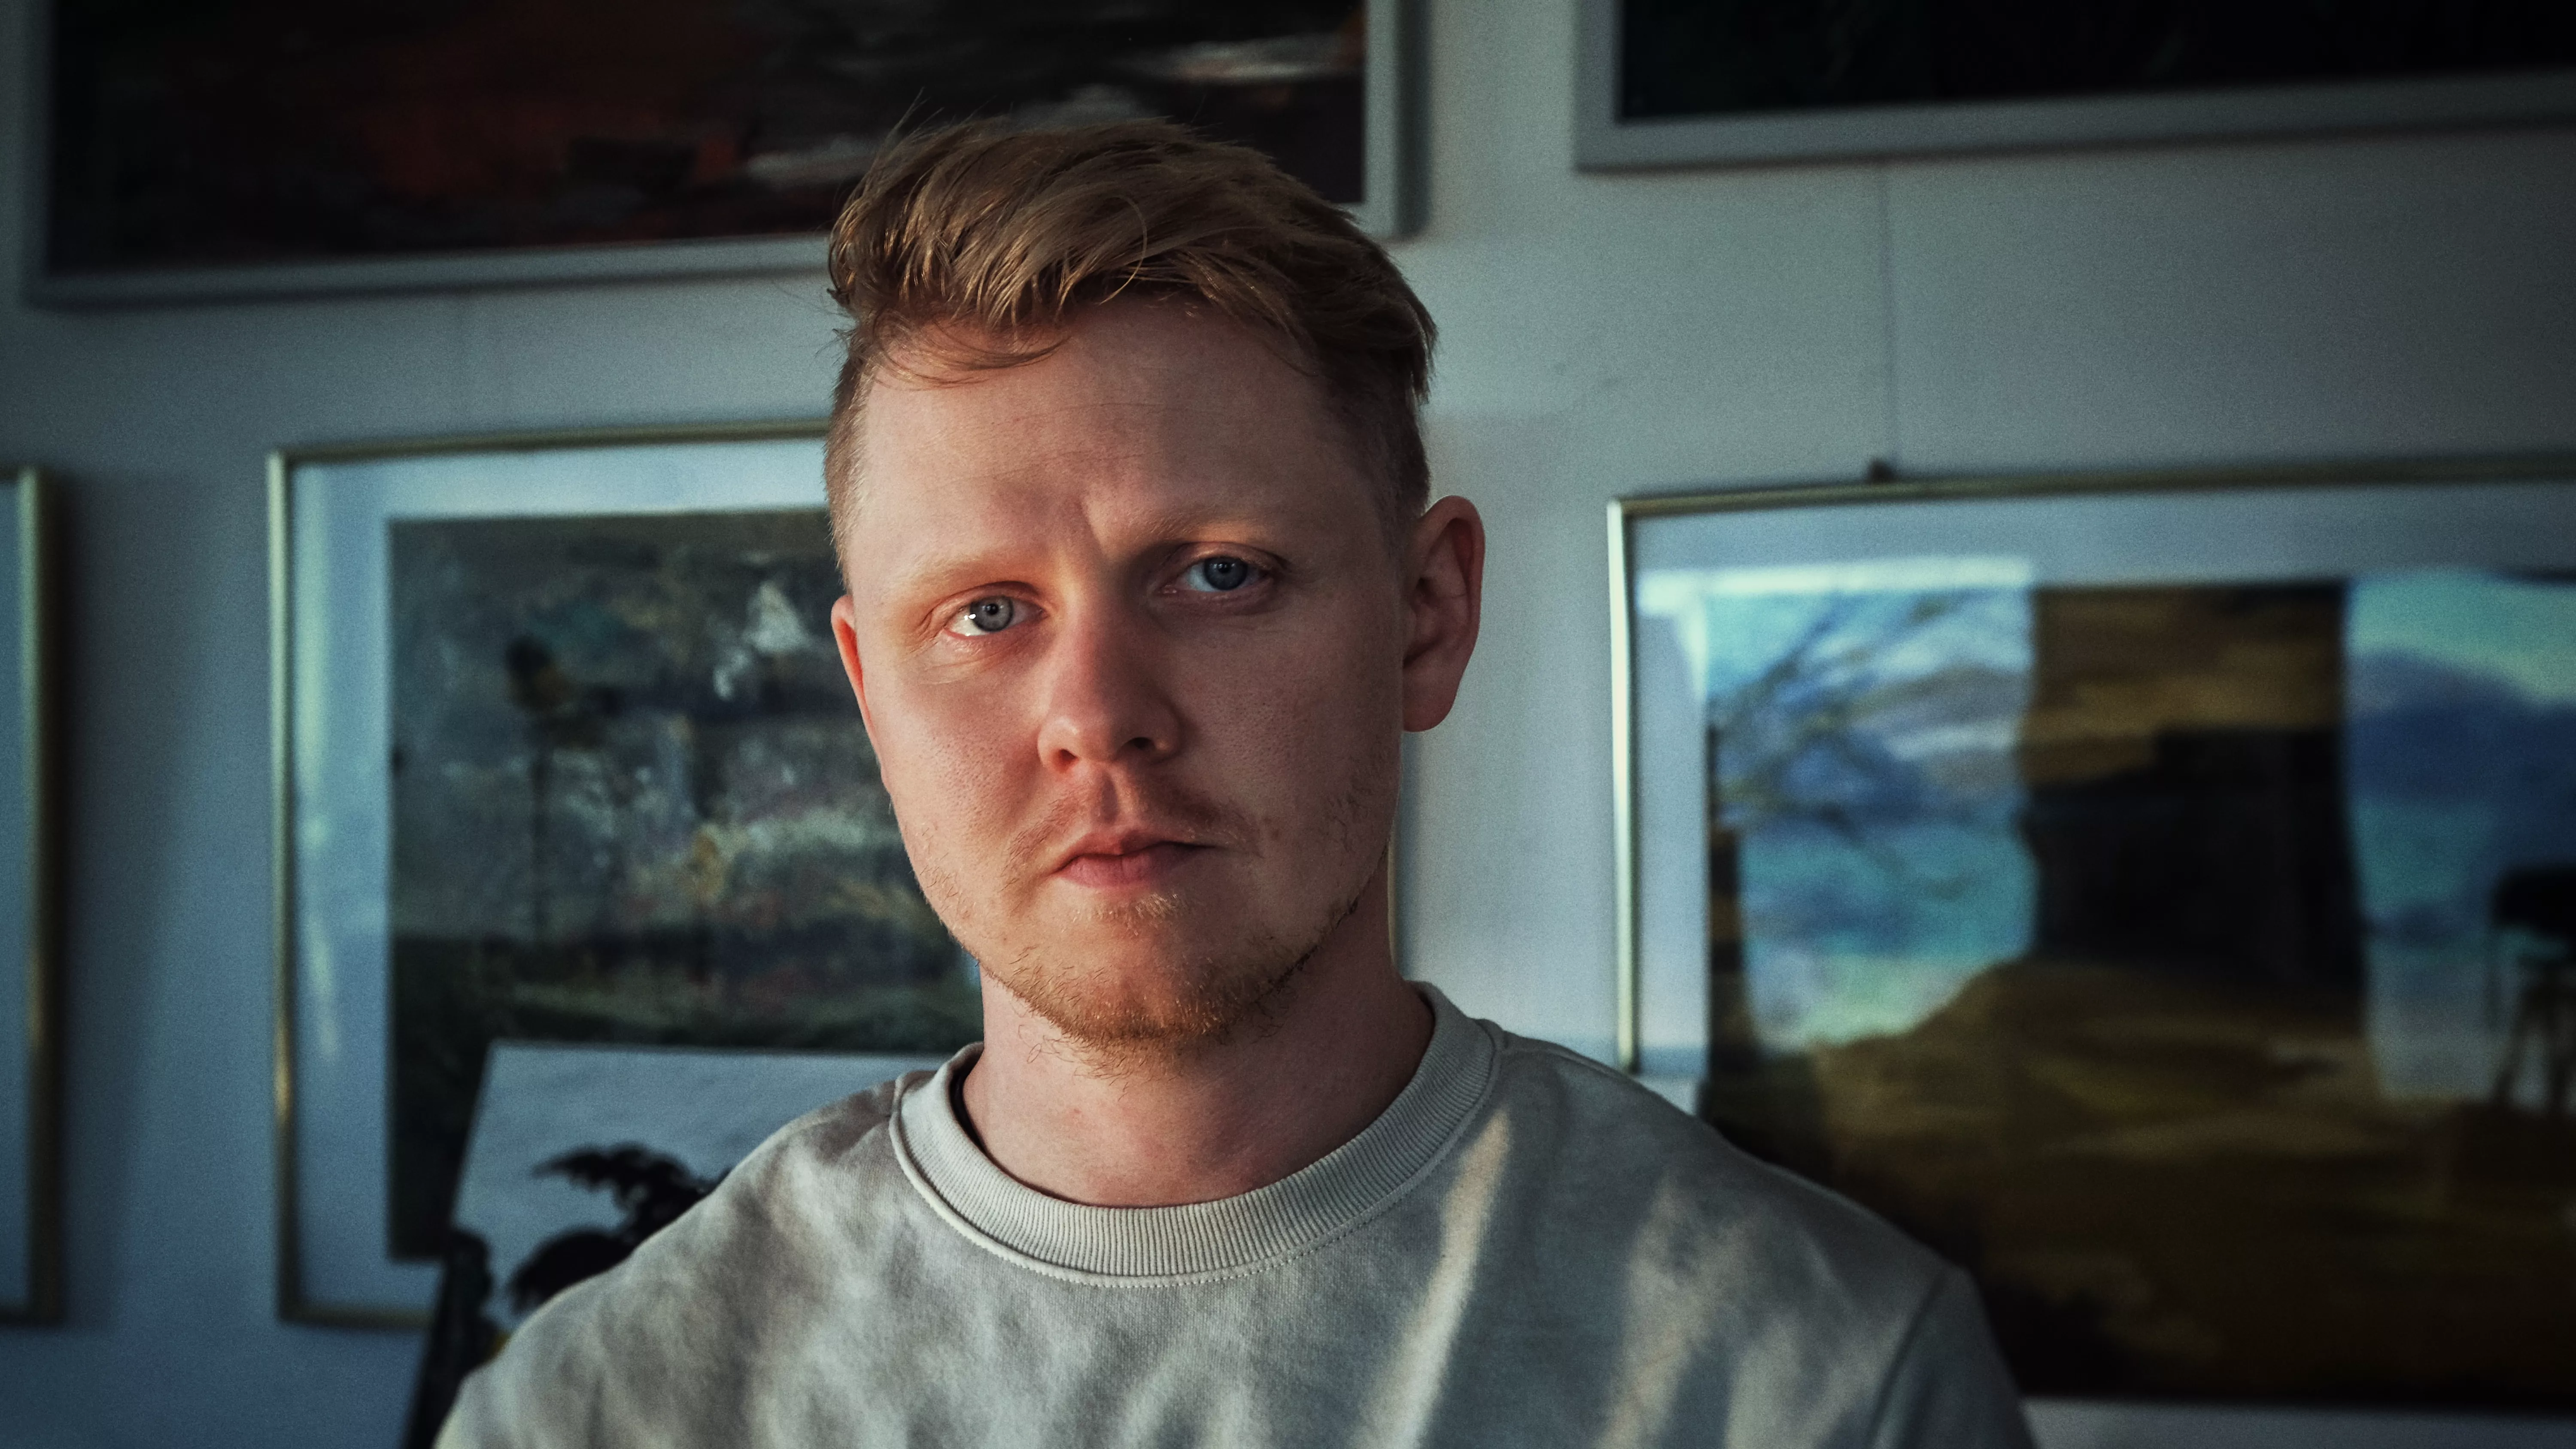  Ragnar Ægir skapar cinematic widescreen pop – "jag vill utforska olika tempon och känslor"